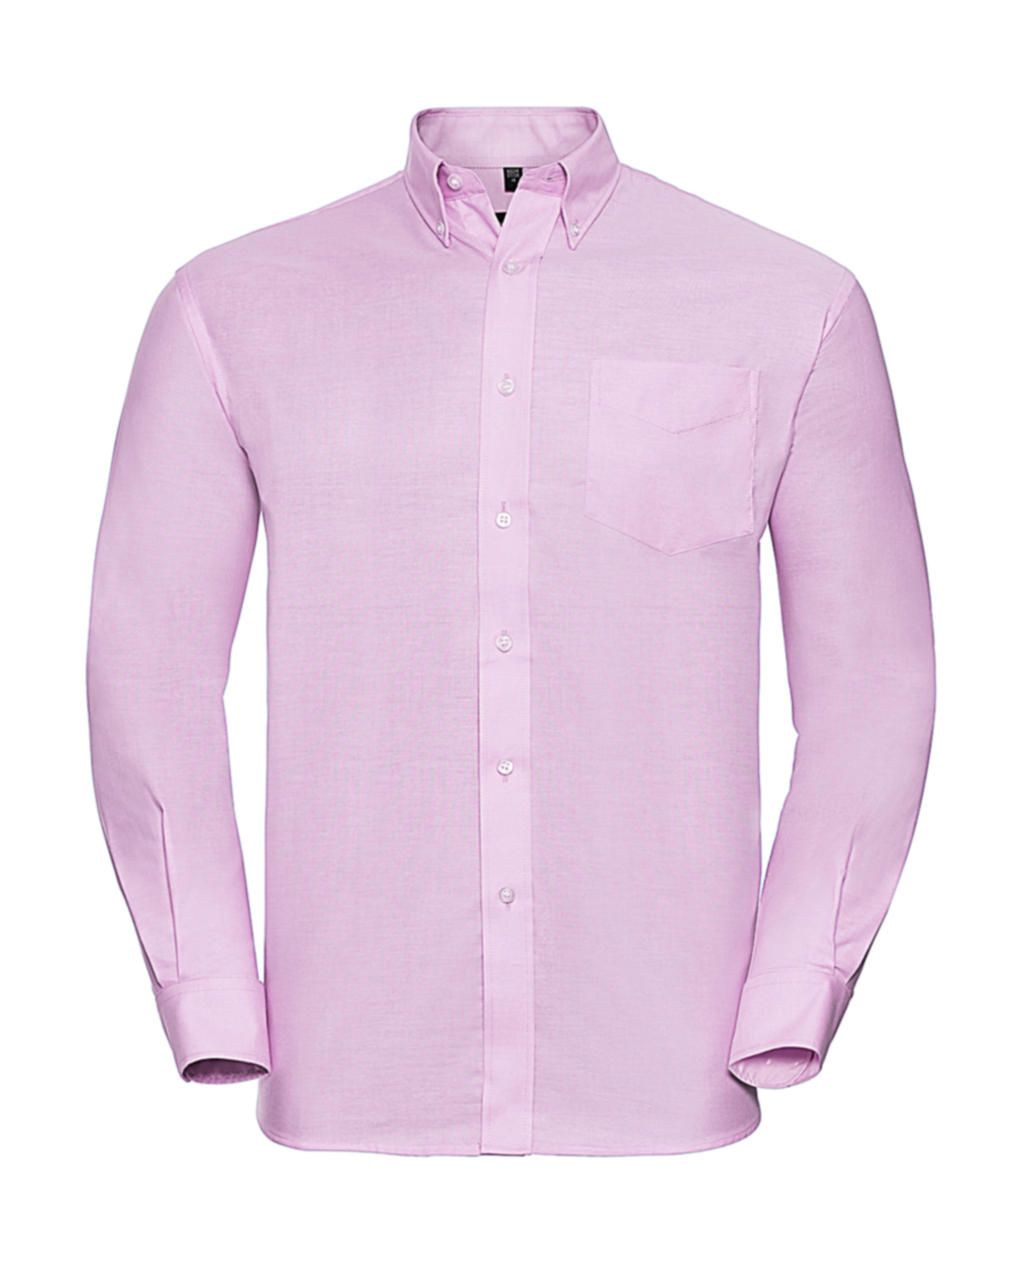 Košile Oxford s dlouhým rukávem Velikost: 4XL, Barva: Classic Pink